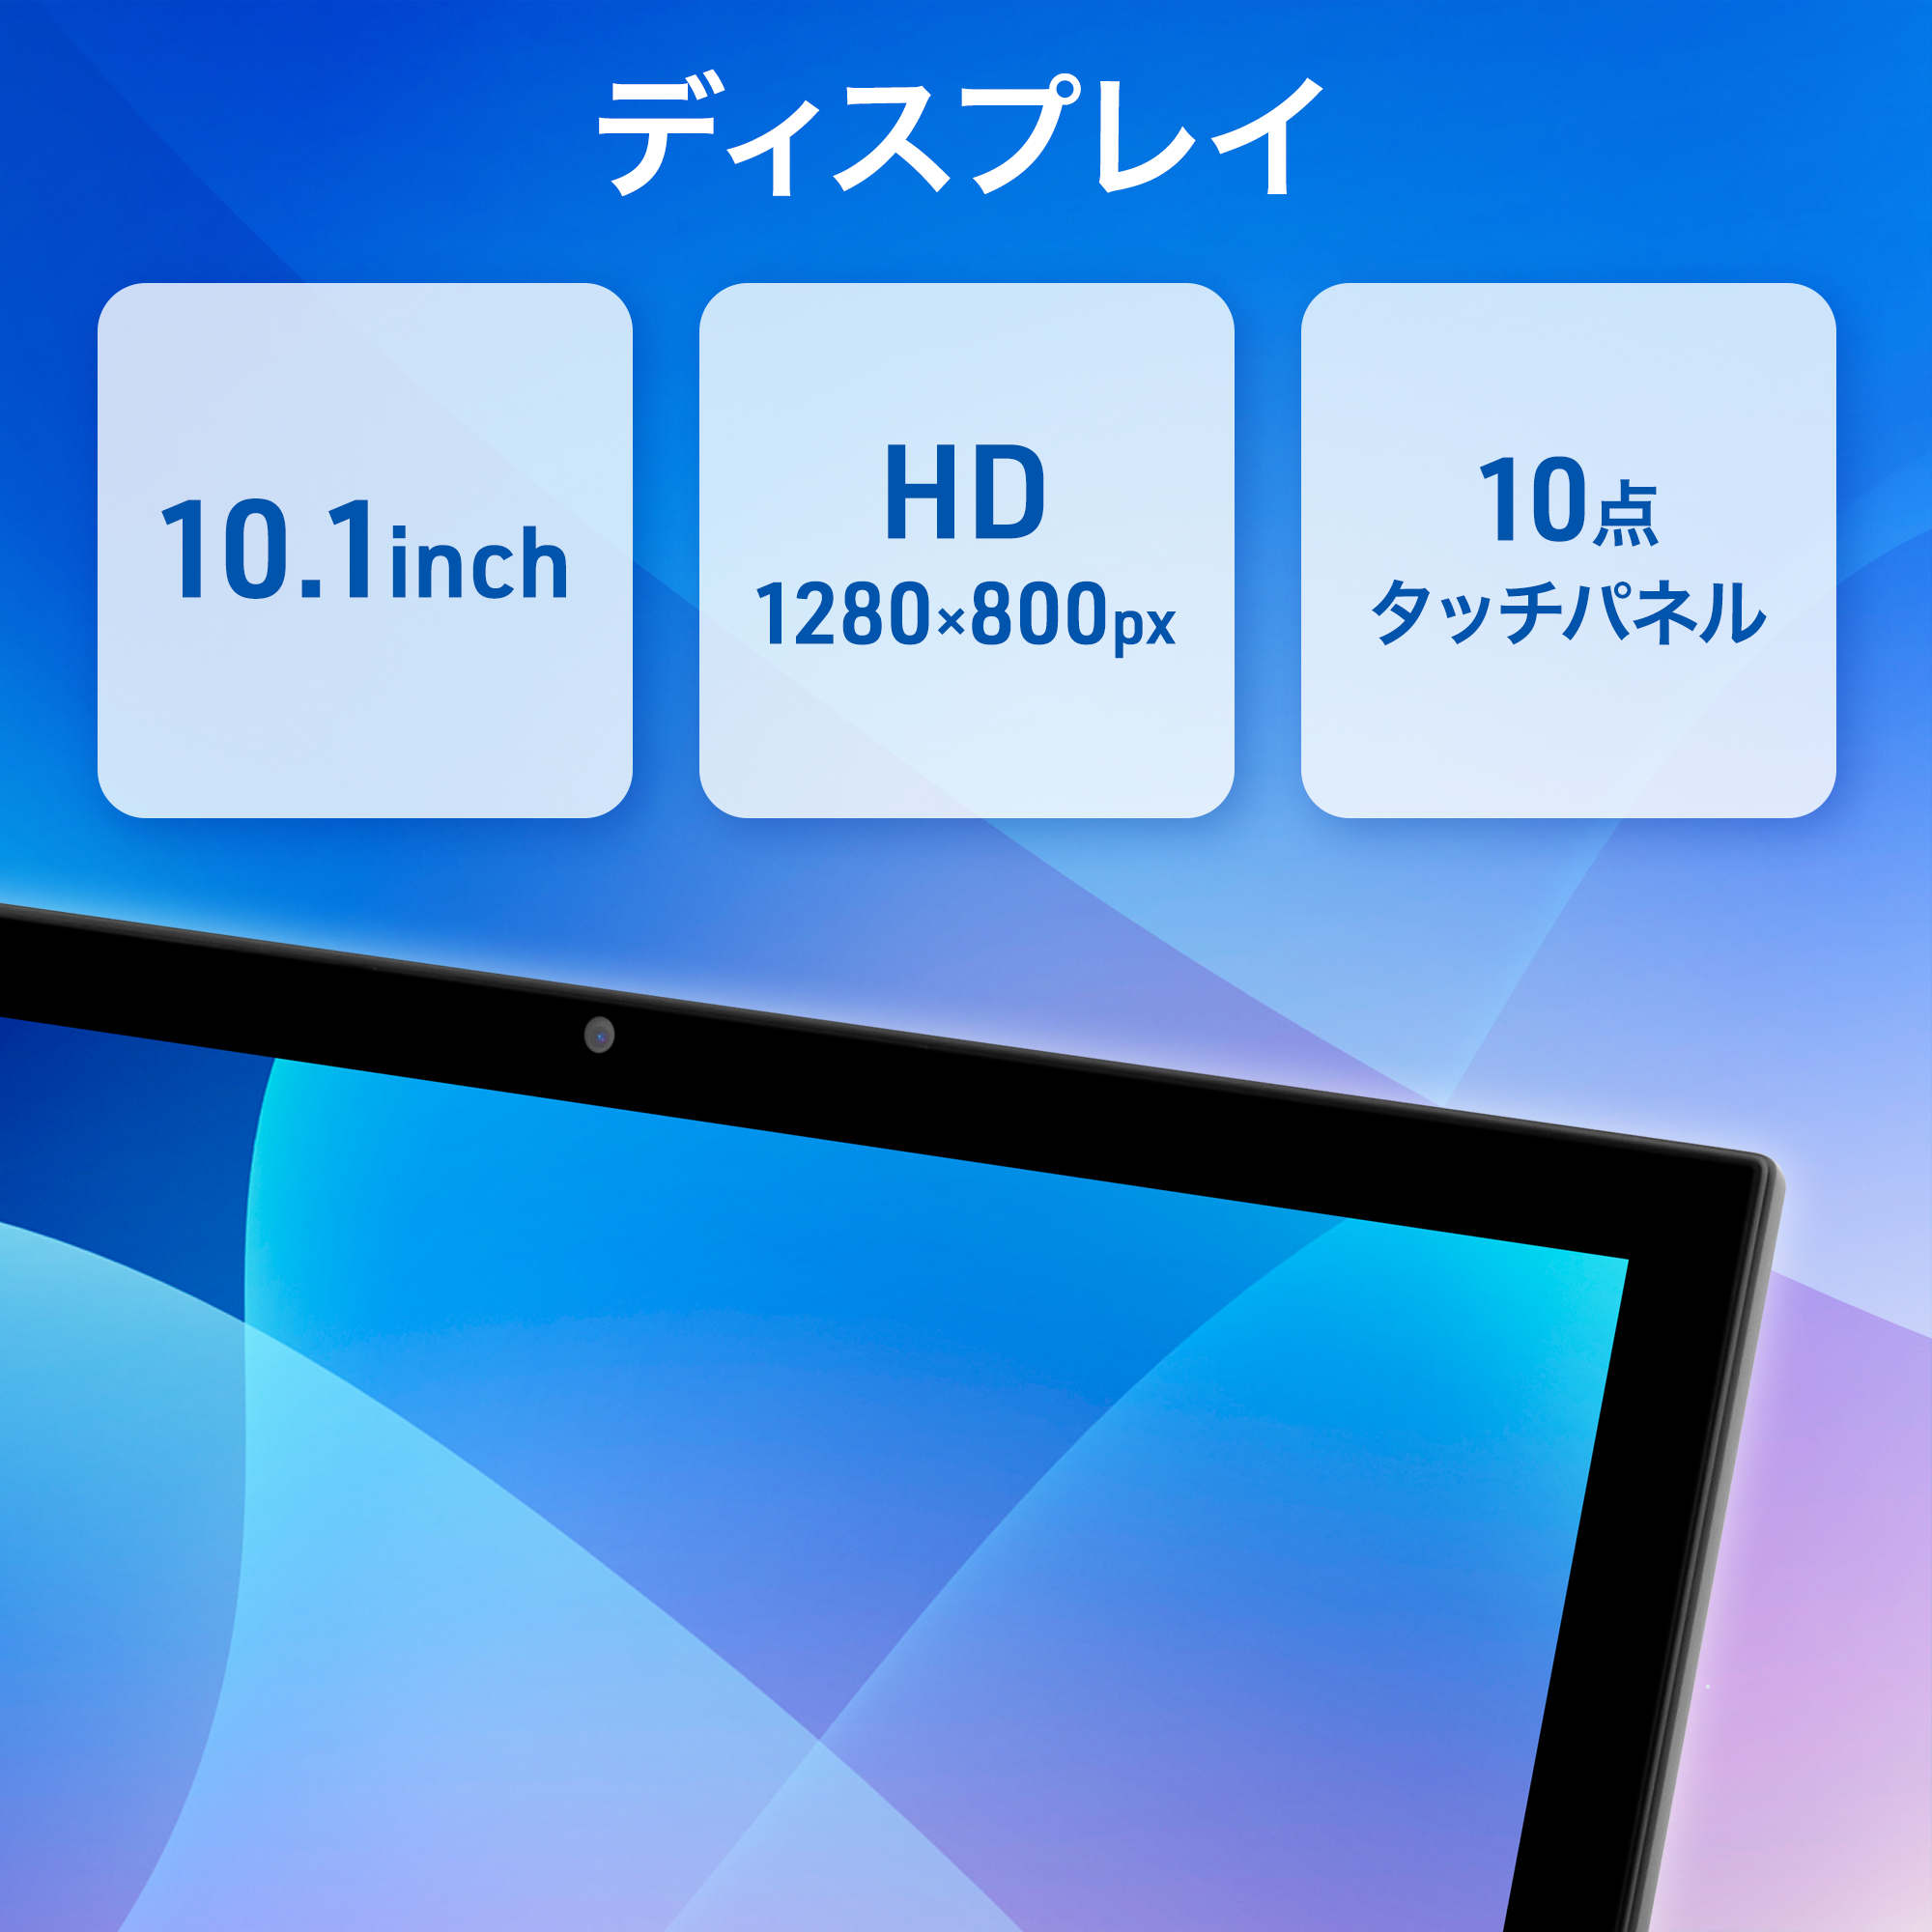 Aiwa タブレット 10.1インチ